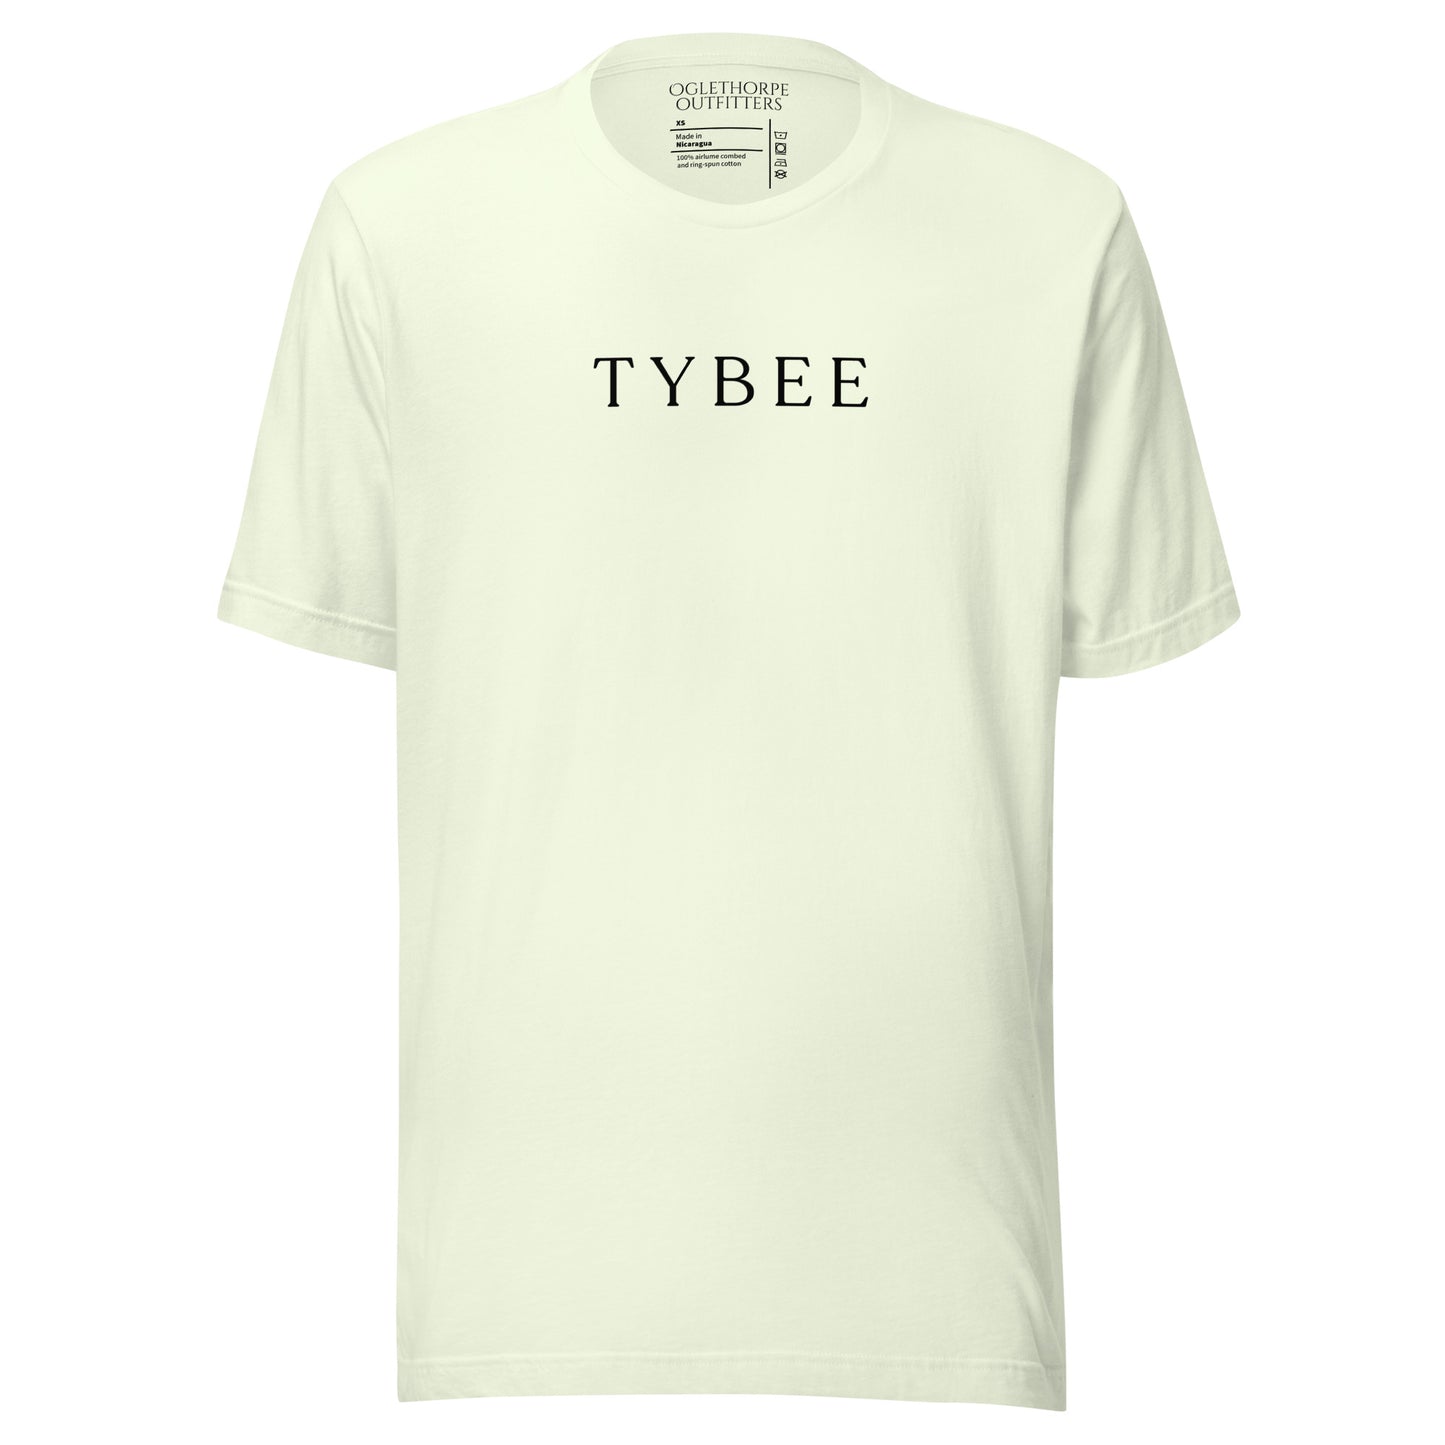 Signature Tybee T-Shirt